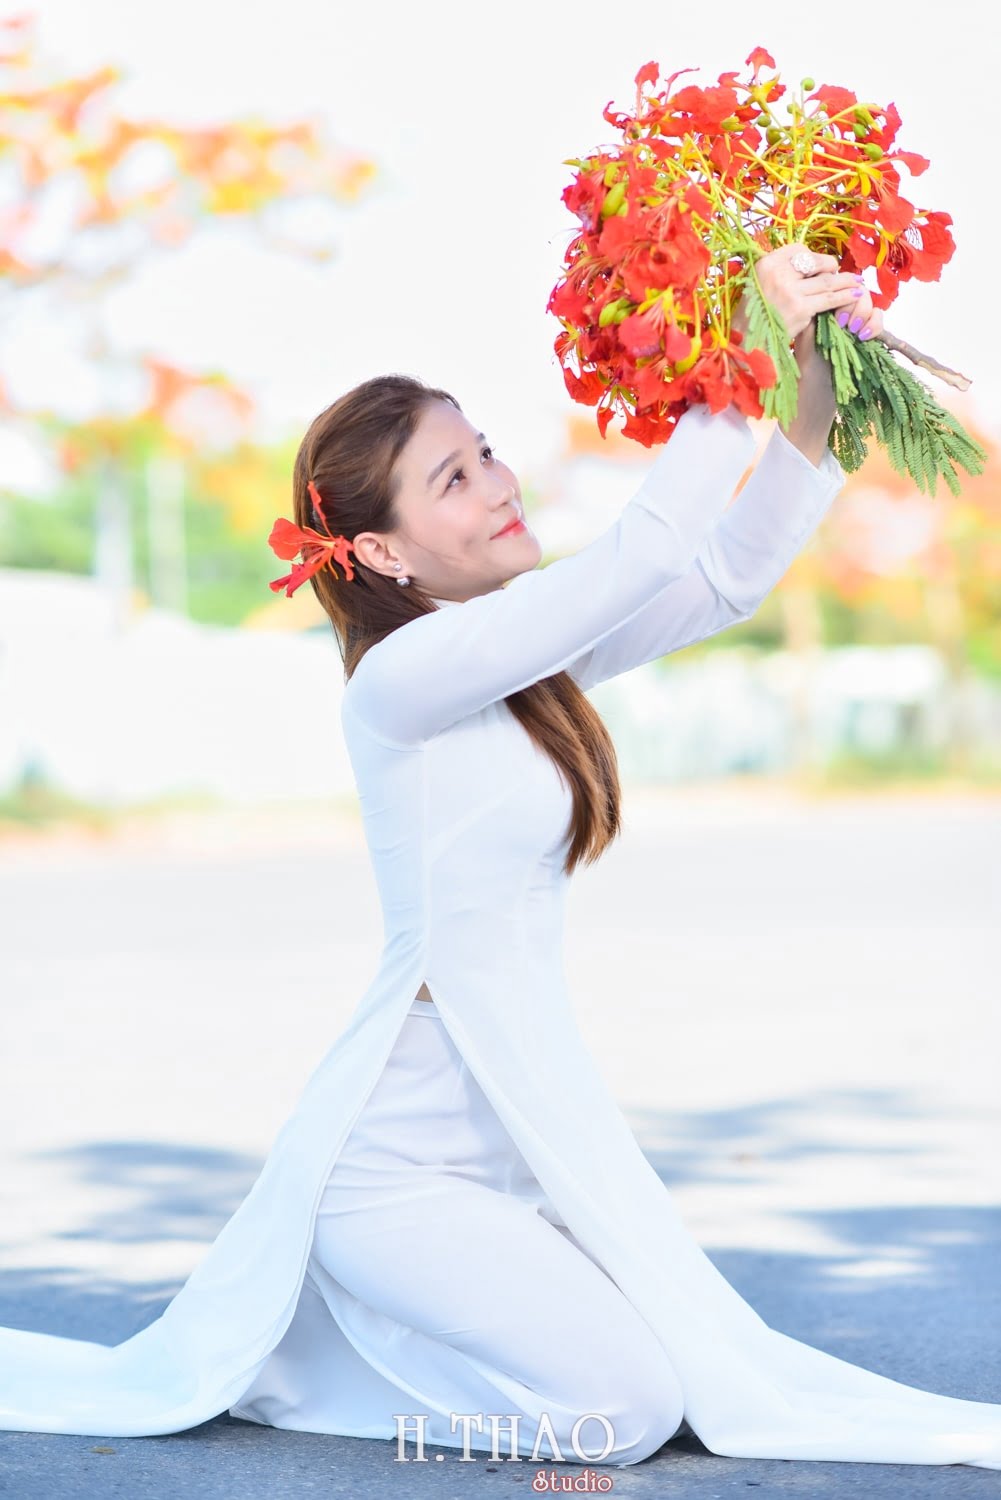 Anh hoa phuong 18 min - Tổng hợp concept chụp ảnh với hoa phượng tháng 5 đẹp – HThao Studio